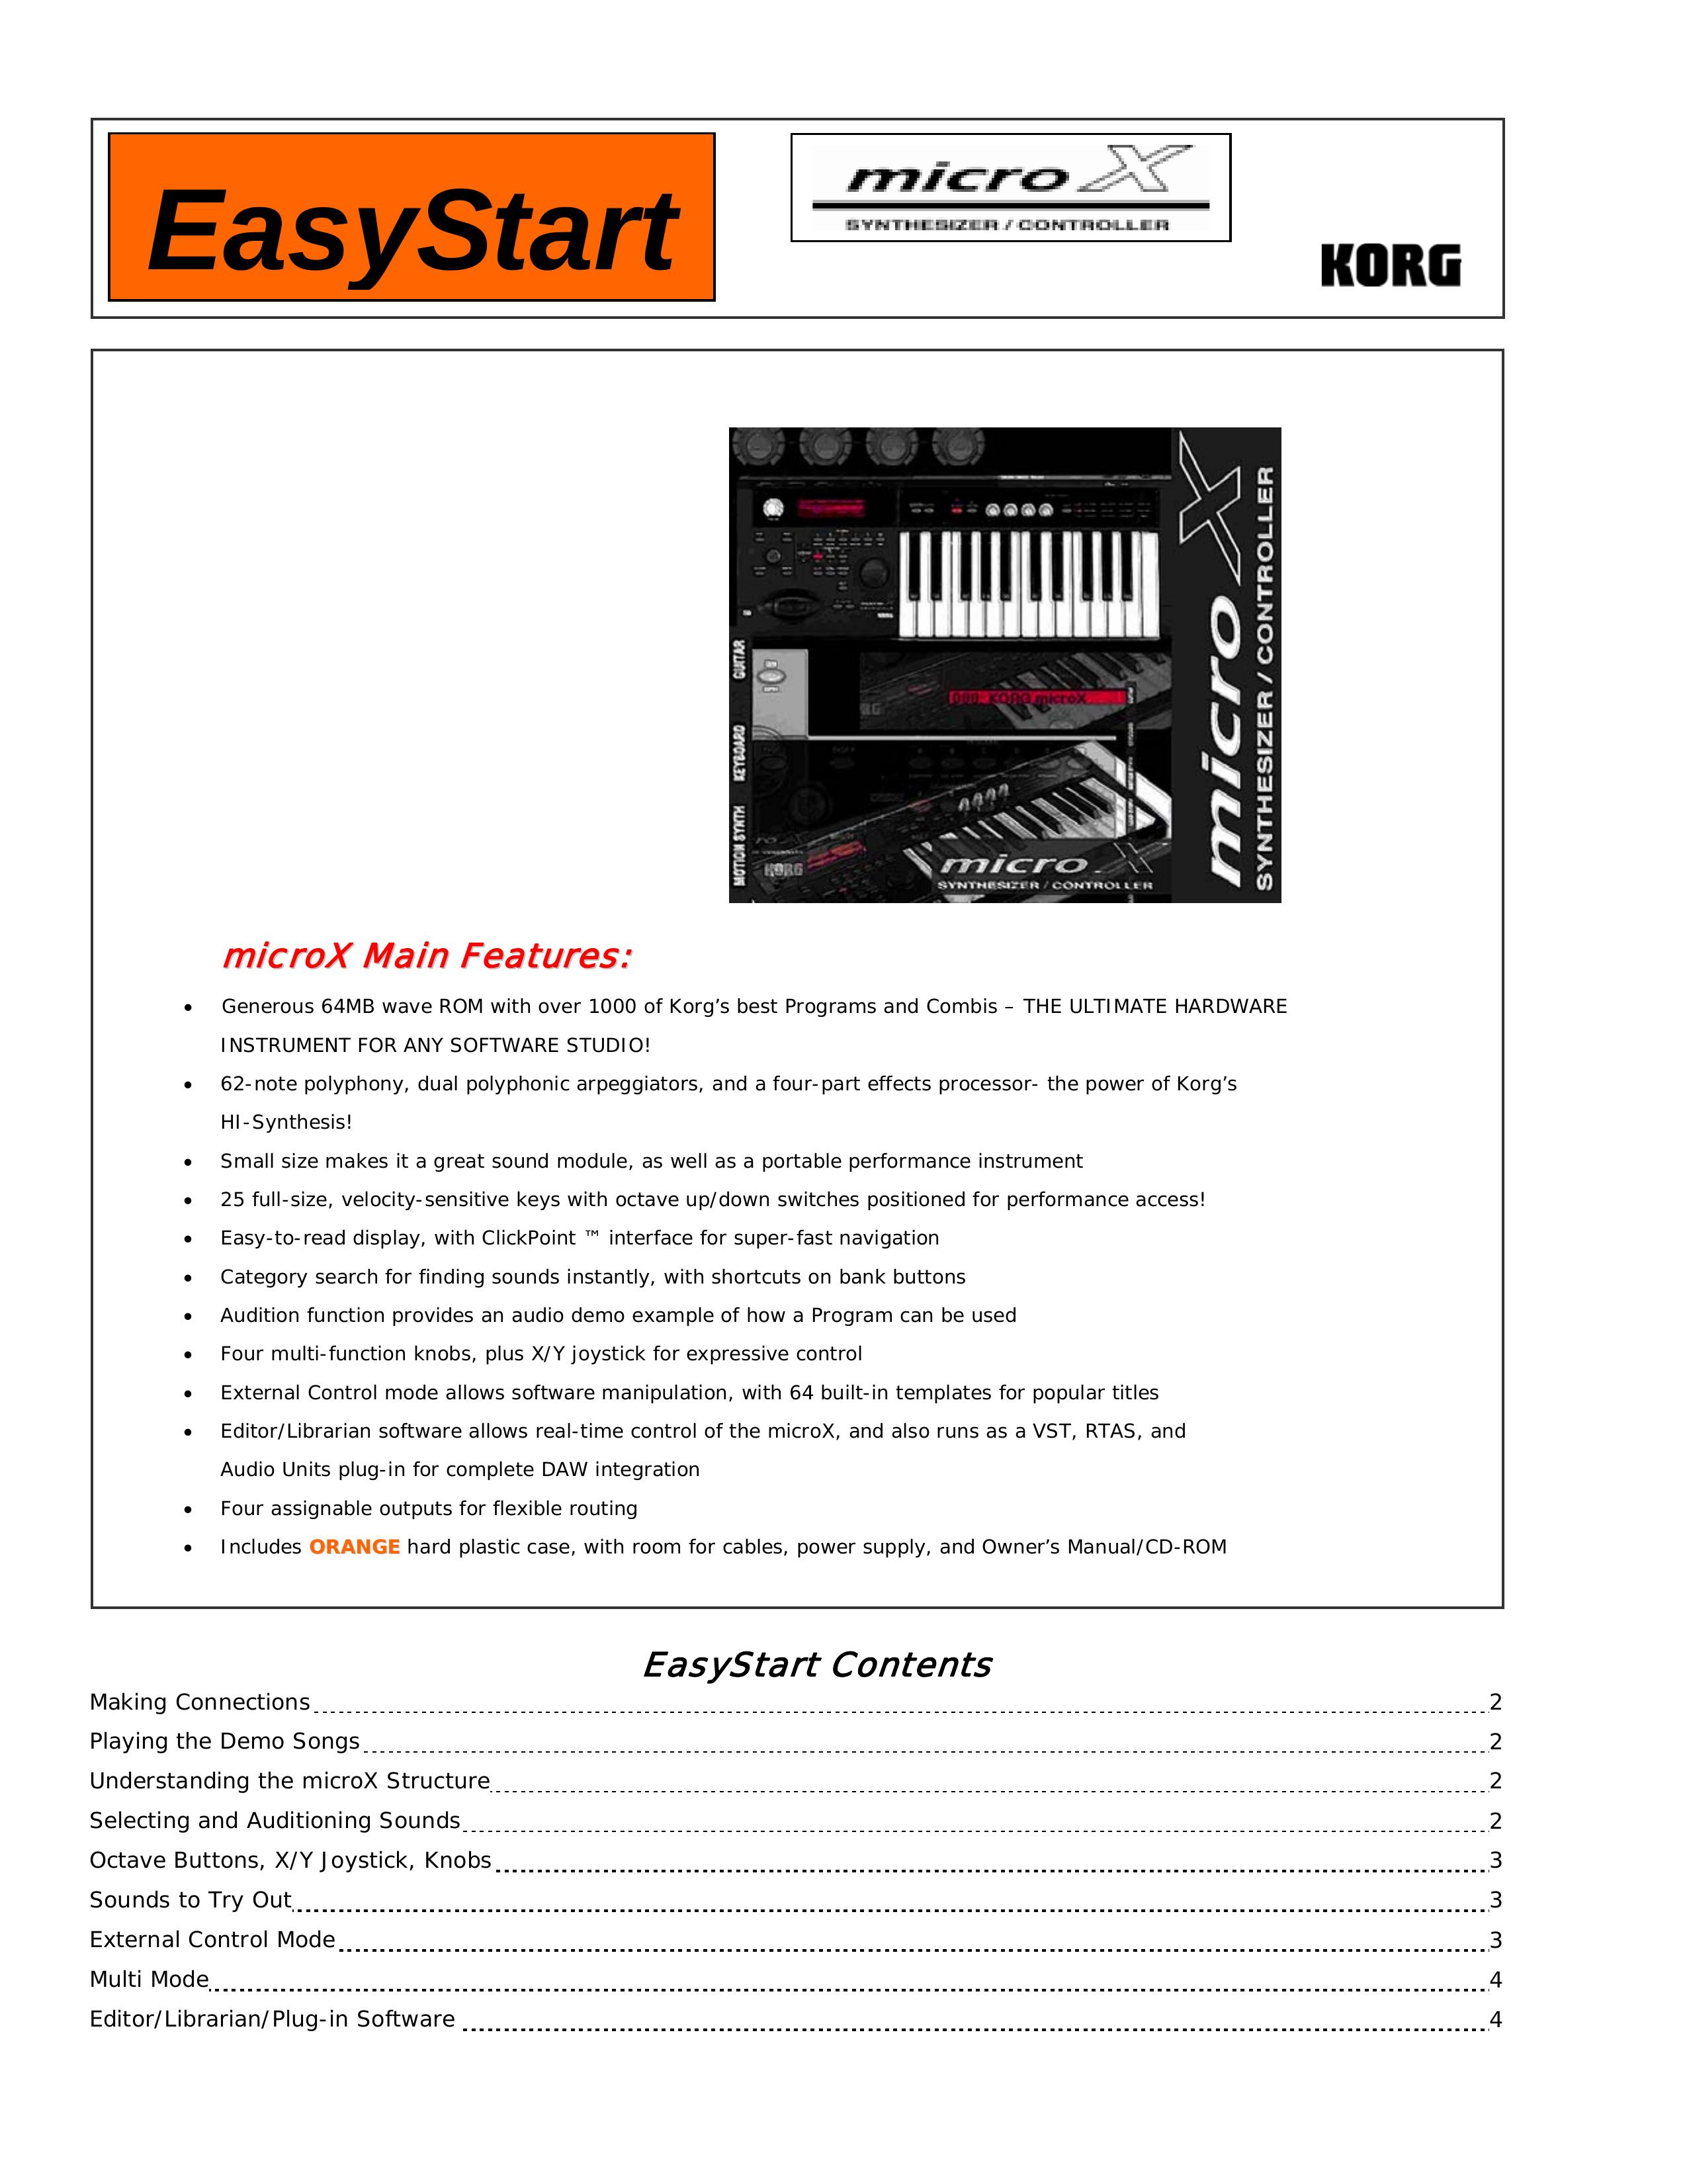 Korg microX Electronic Keyboard User Manual